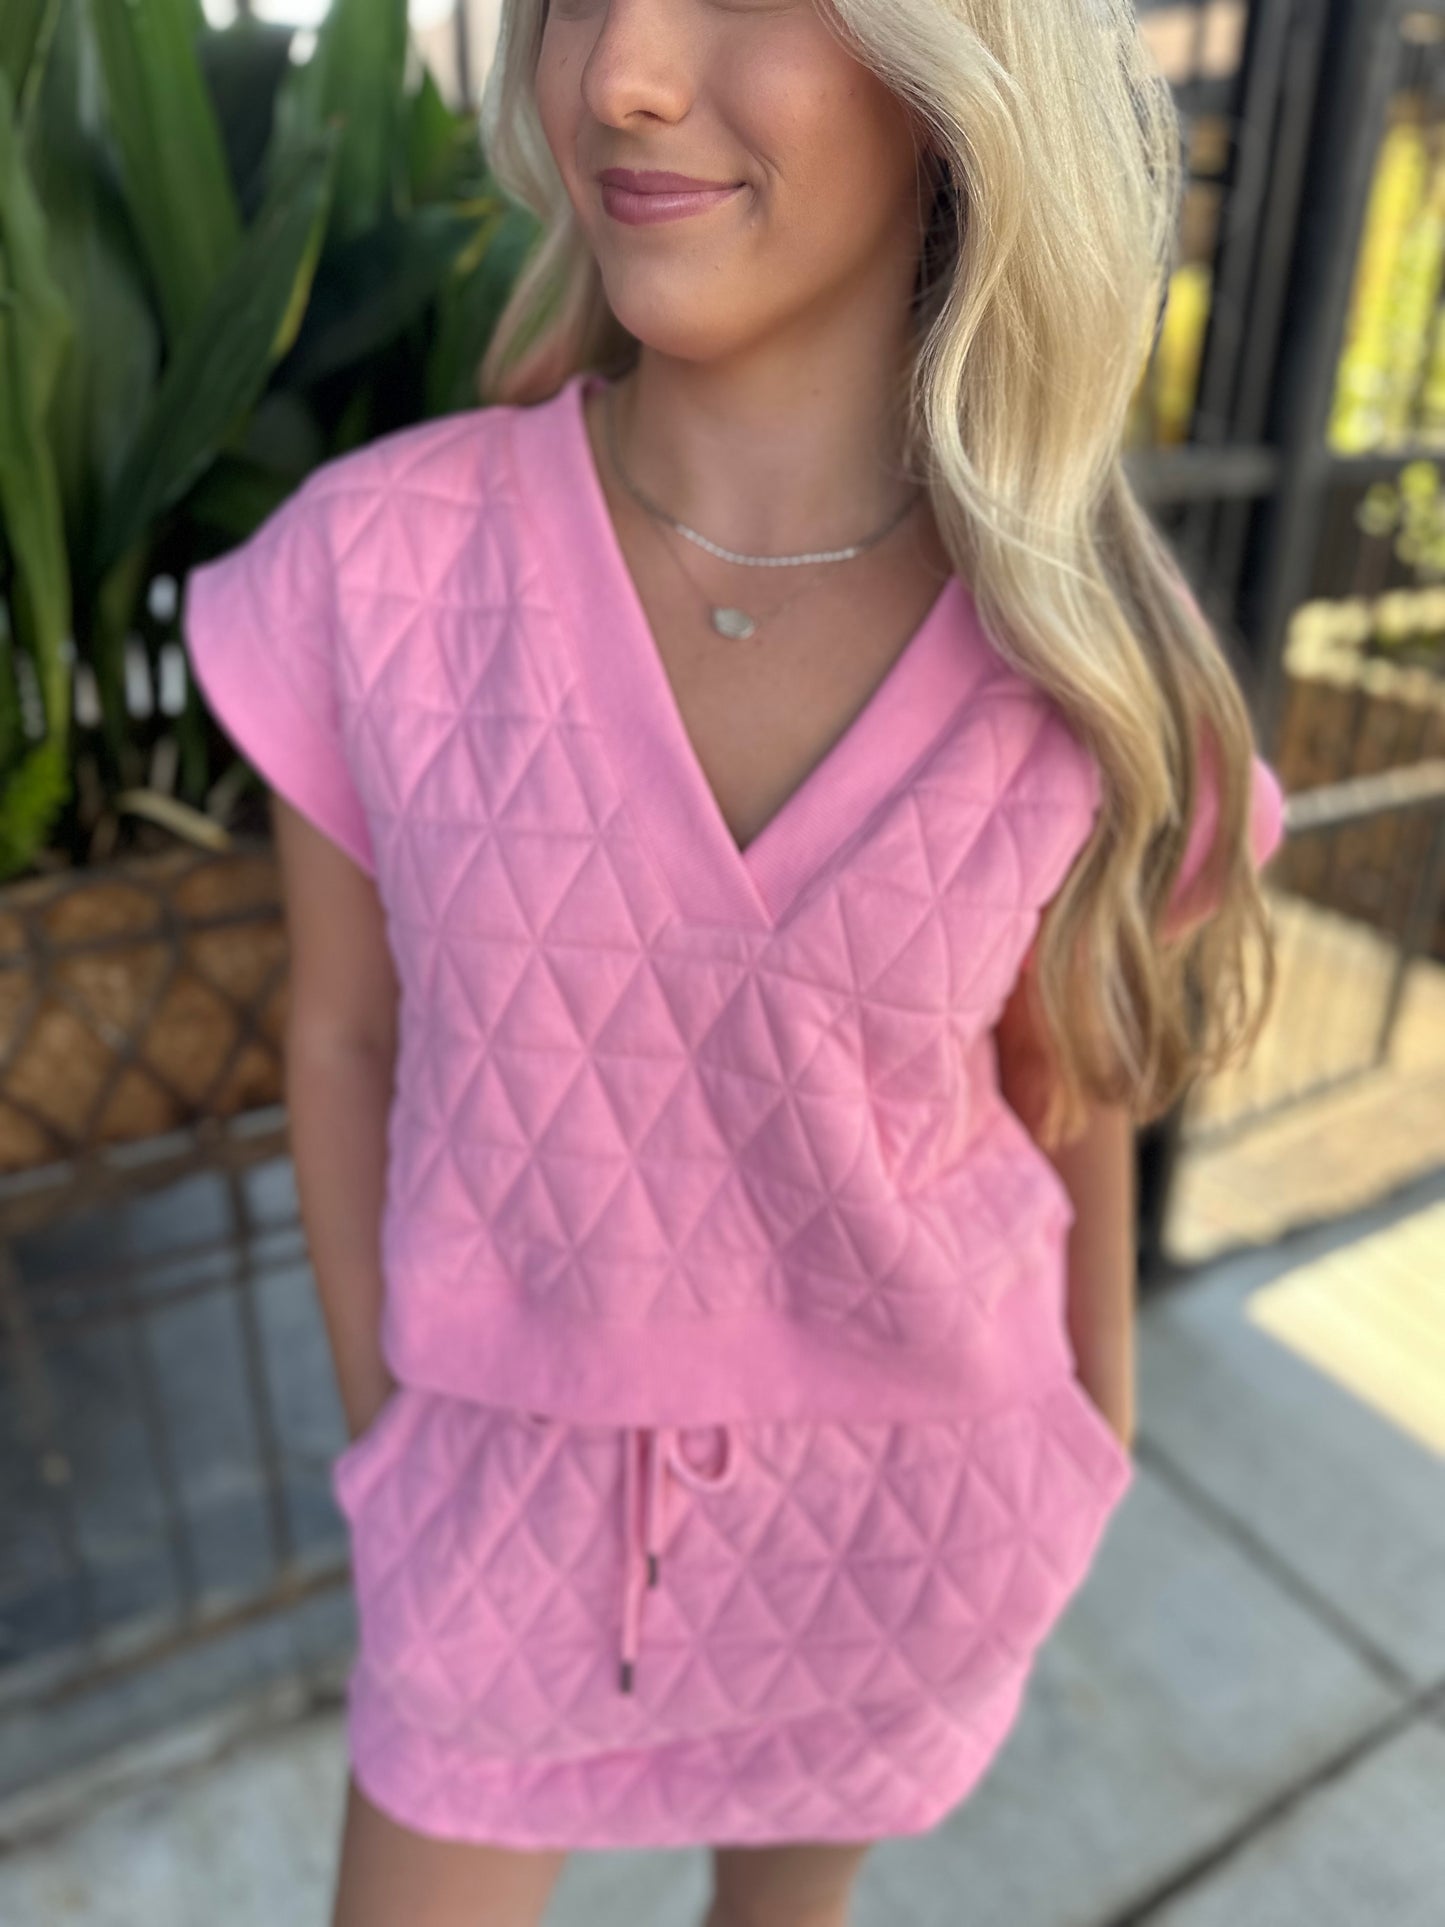 Charbonnet Textured Skirt- Pink